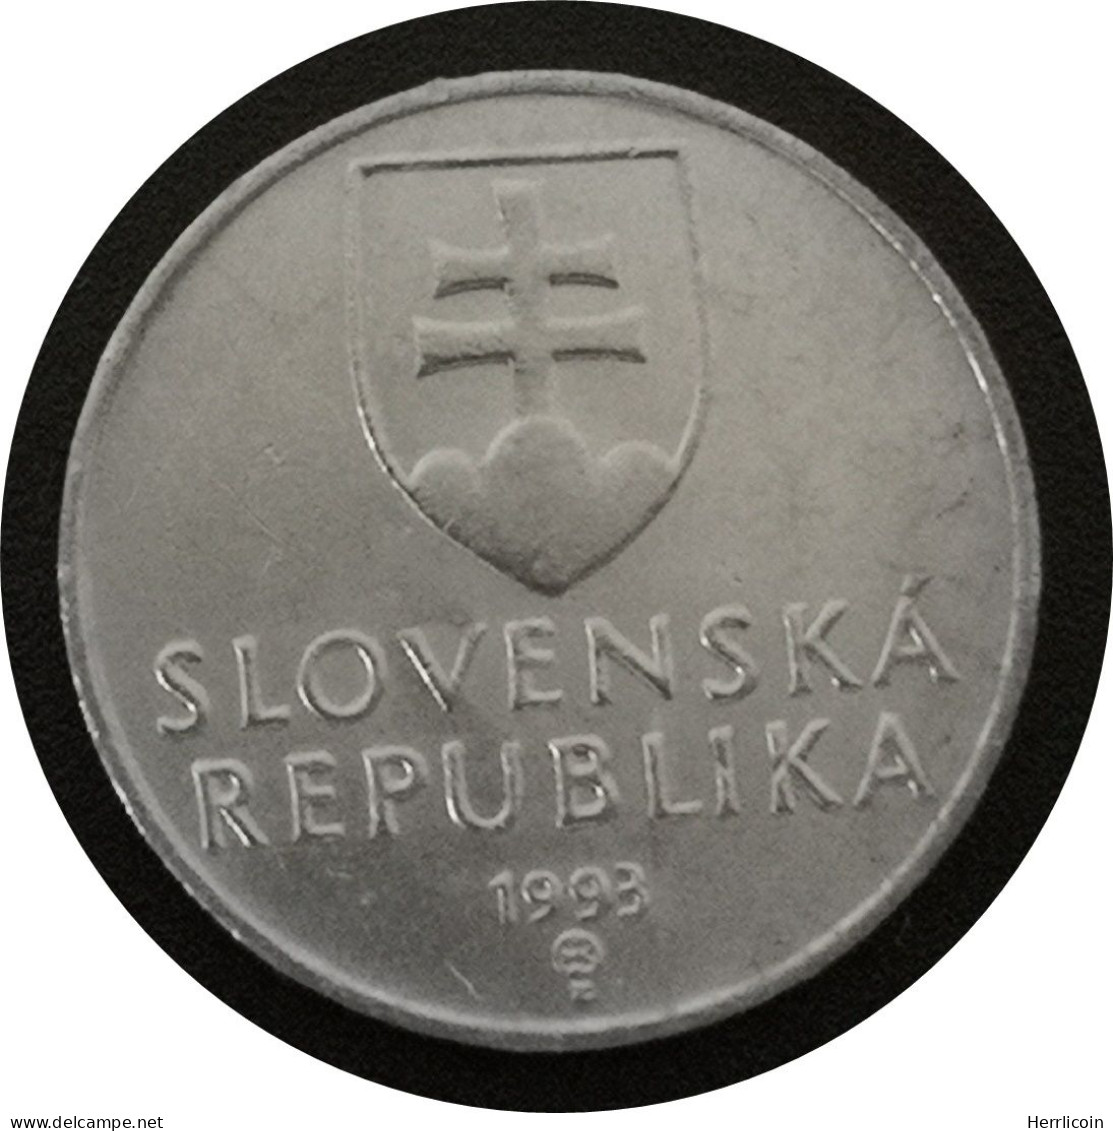 Monnaie Slovaquie - 1993 - 10 Halierov - Slowakije